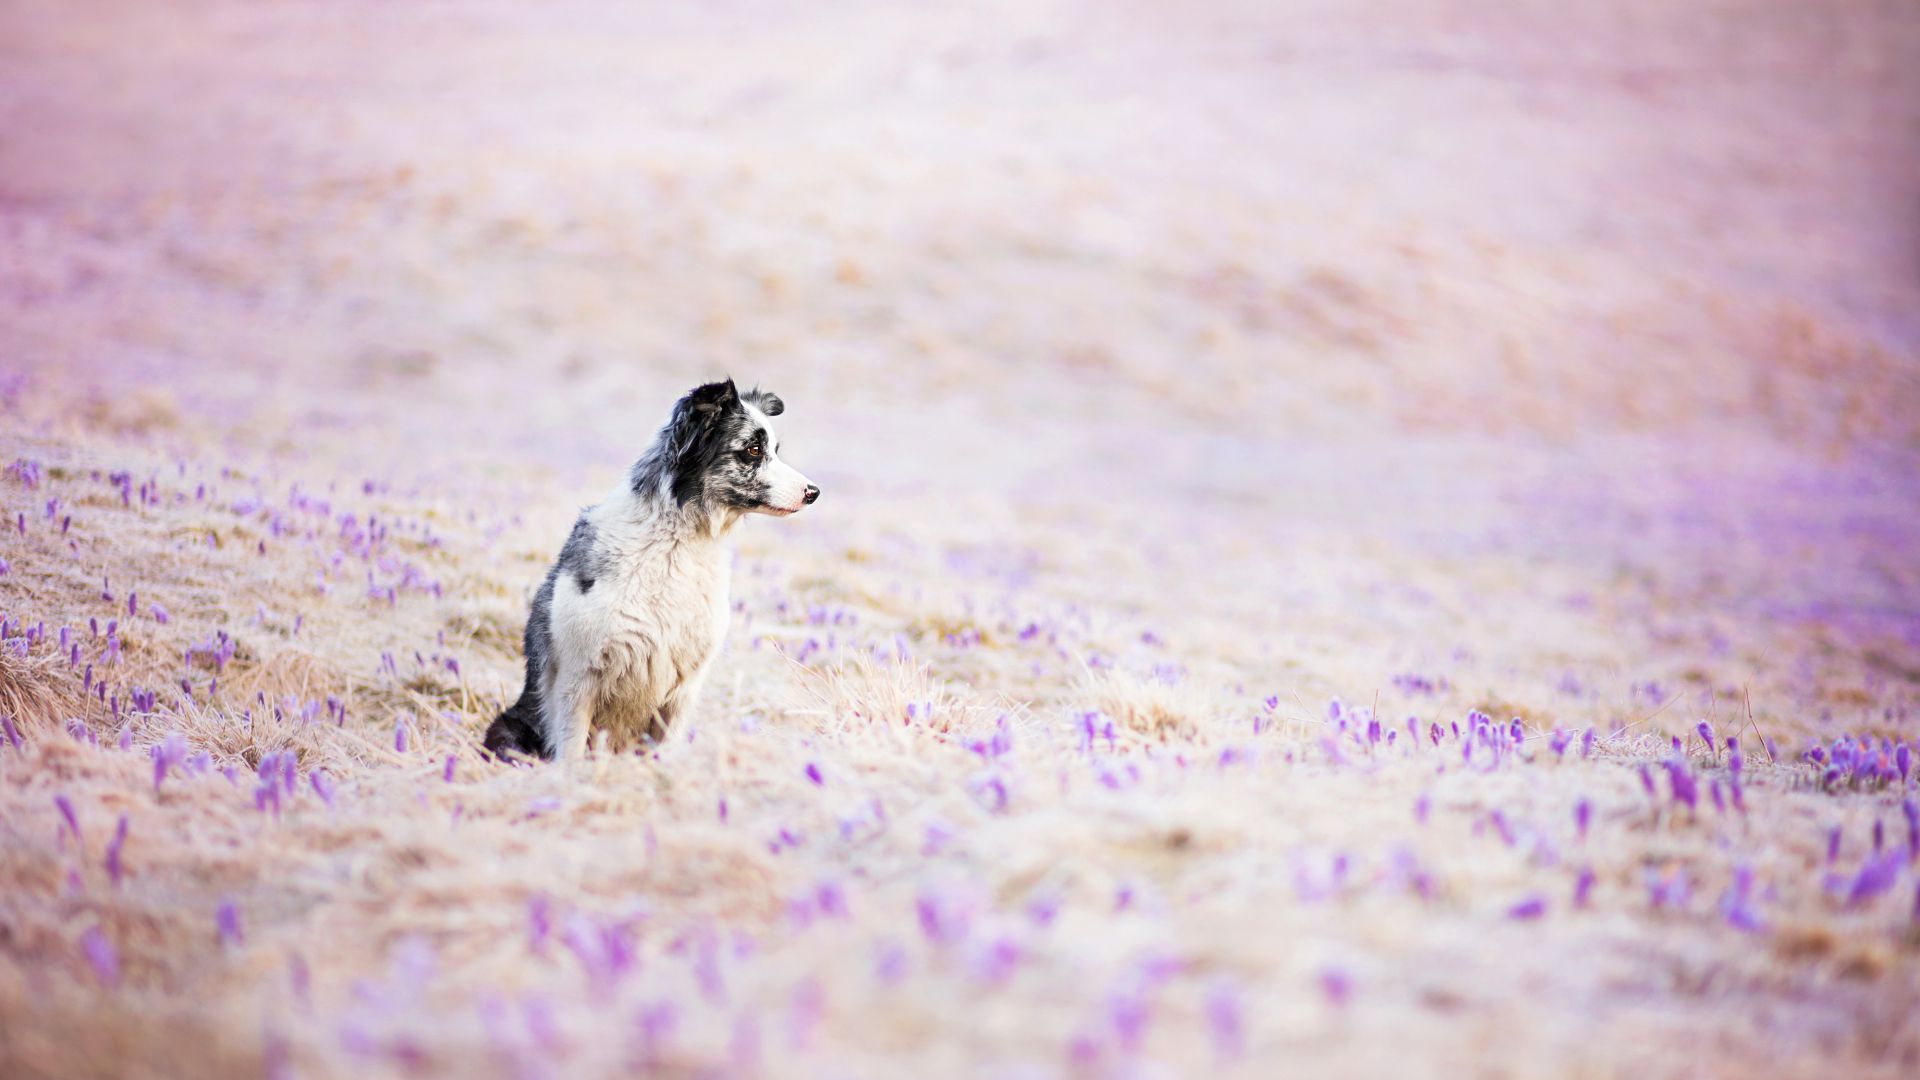 Бордер-колли, собака, поле, милые животные, забавный, Border Collie, dog, field, cute animals, funny (horizontal)